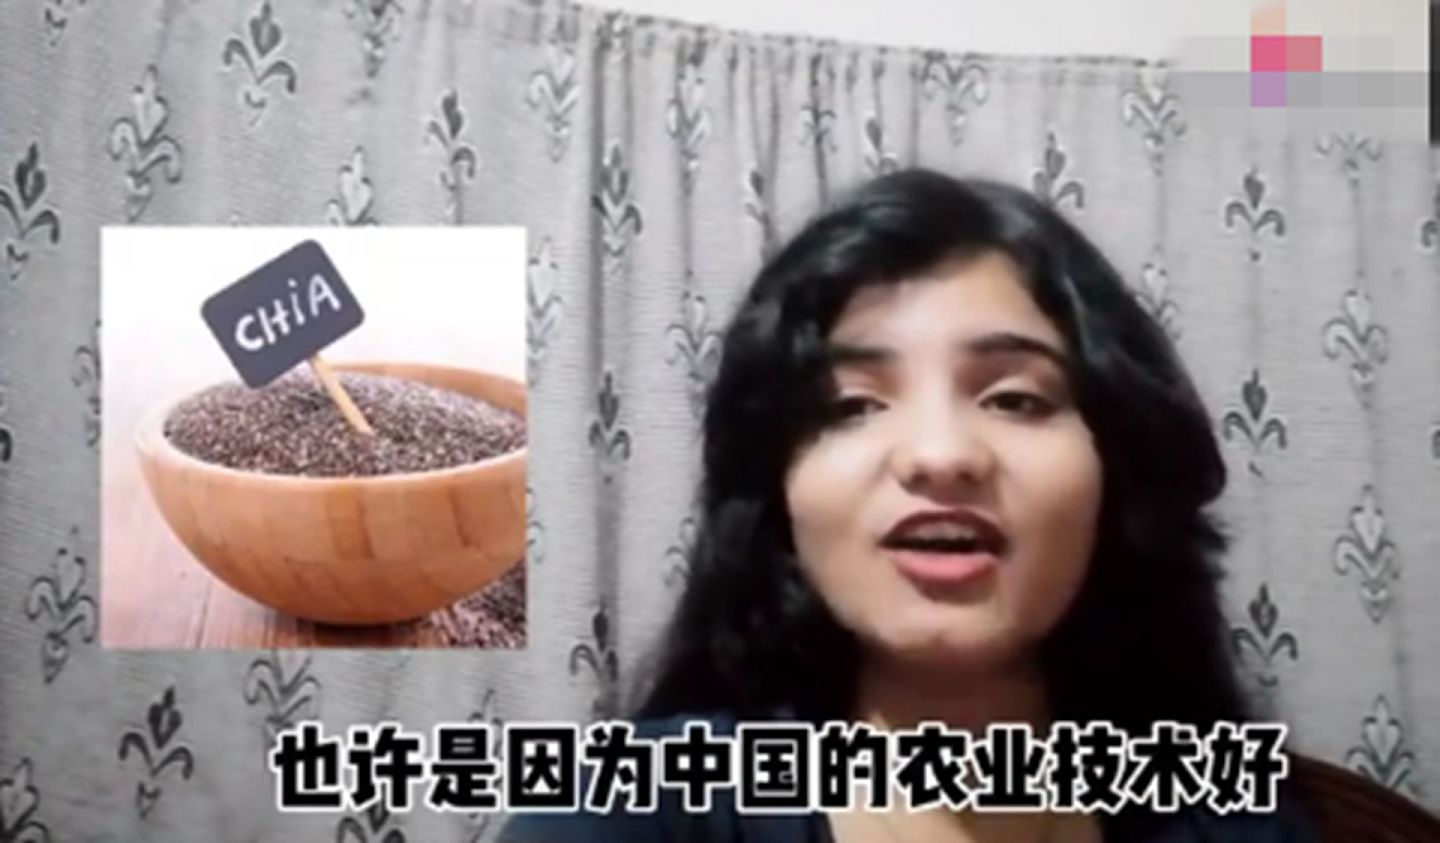 这名女孩儿还称赞中国农业技术好。 （微博@上帝之鹰_5zn）